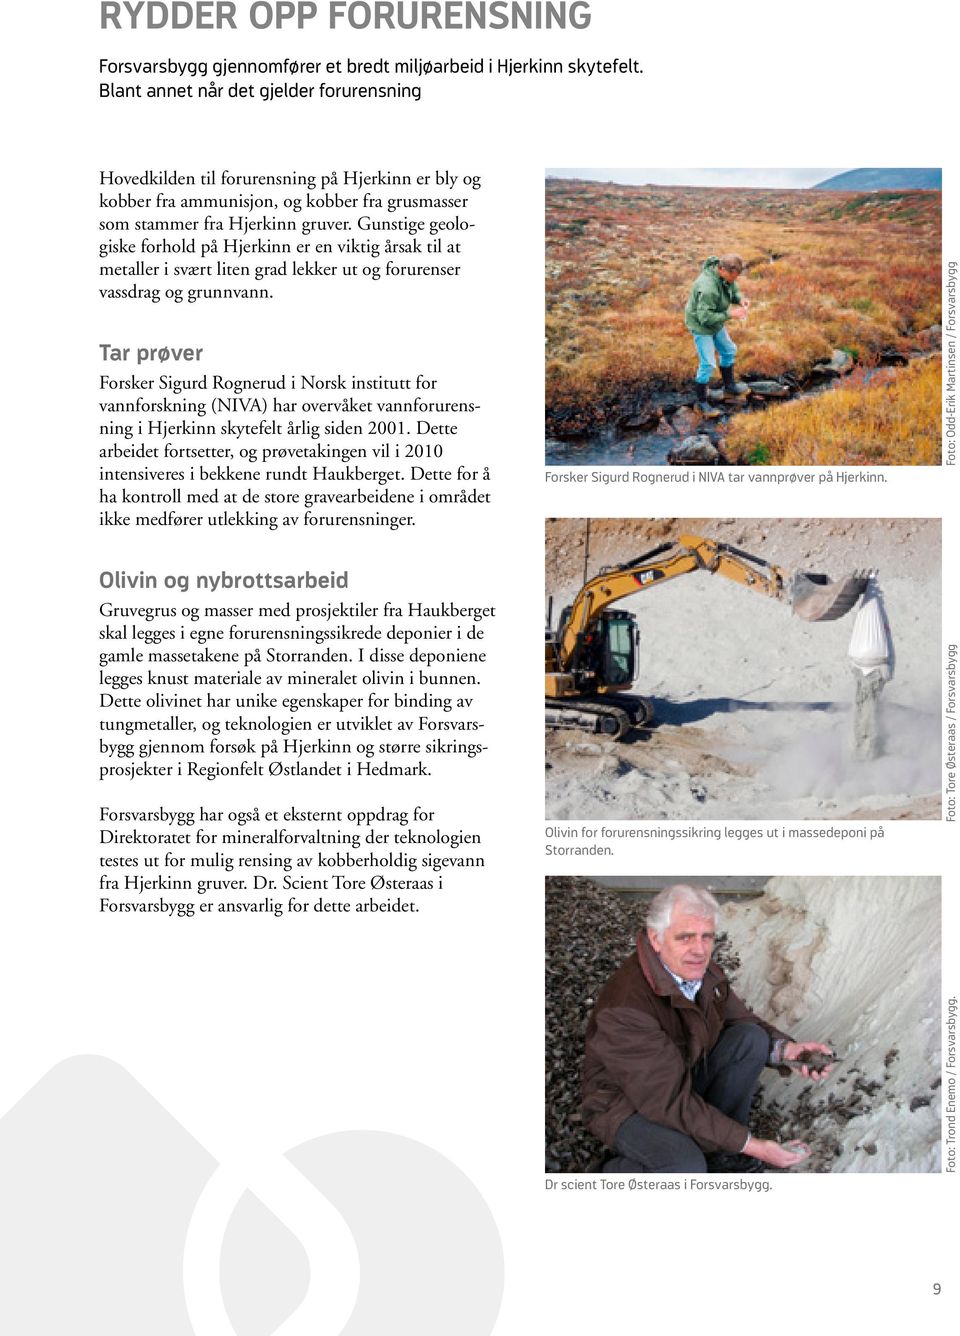 Gunstige geologiske forhold på Hjerkinn er en viktig årsak til at metaller i svært liten grad lekker ut og forurenser vassdrag og grunnvann.